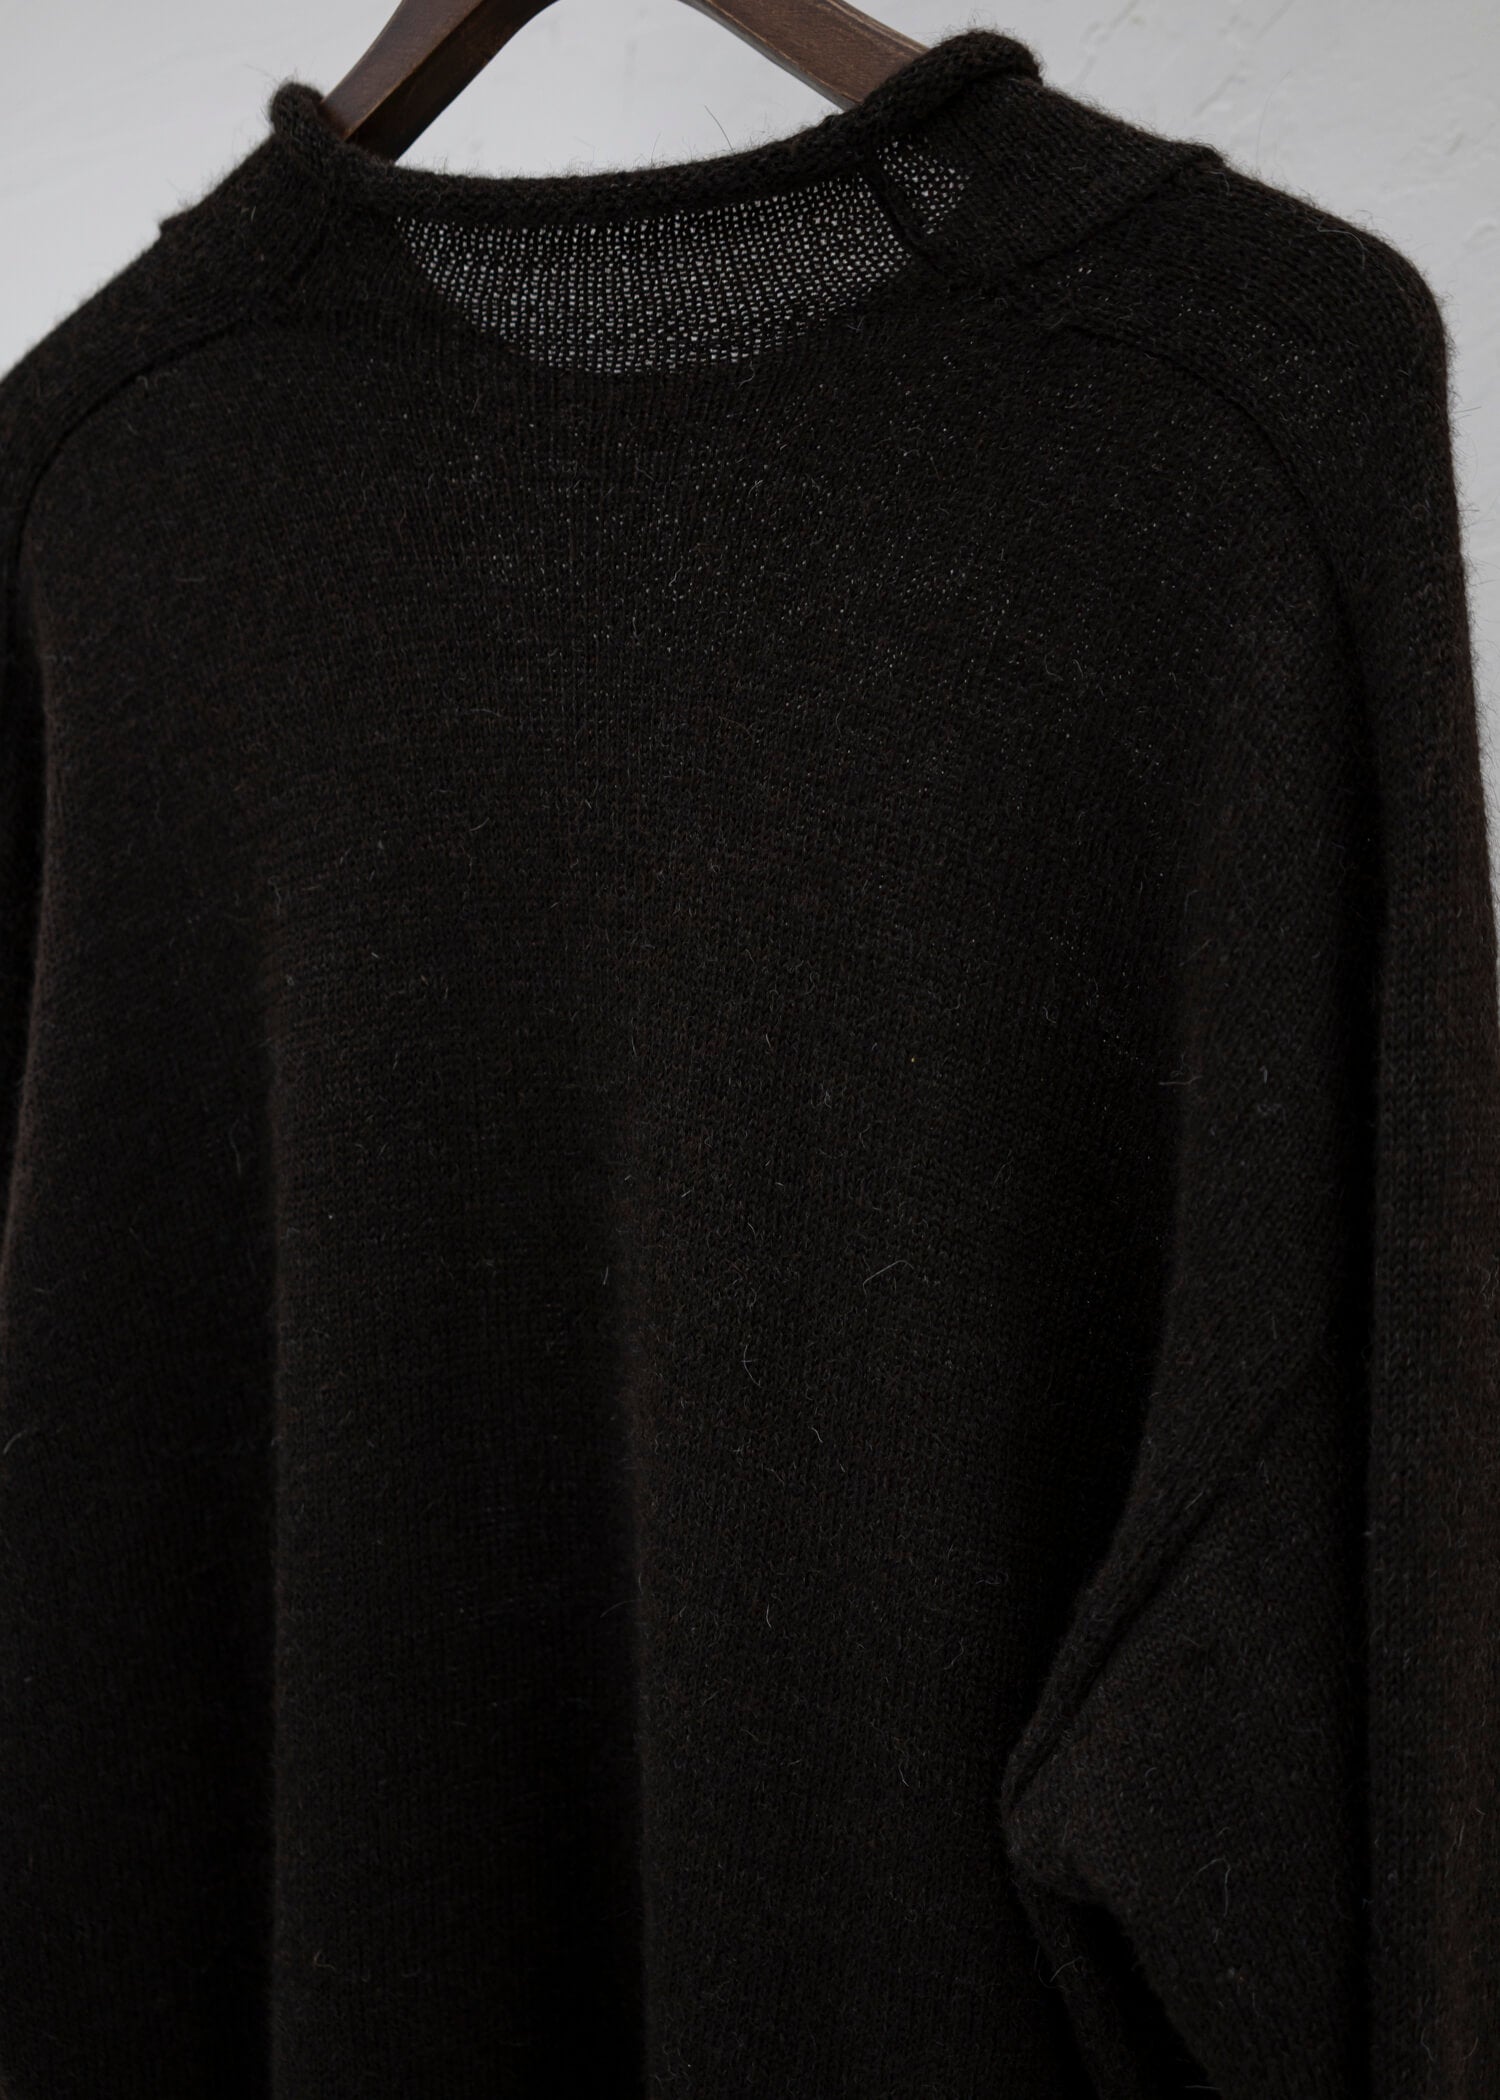 Jurgen Lehl Baby llama pullover knit Brown